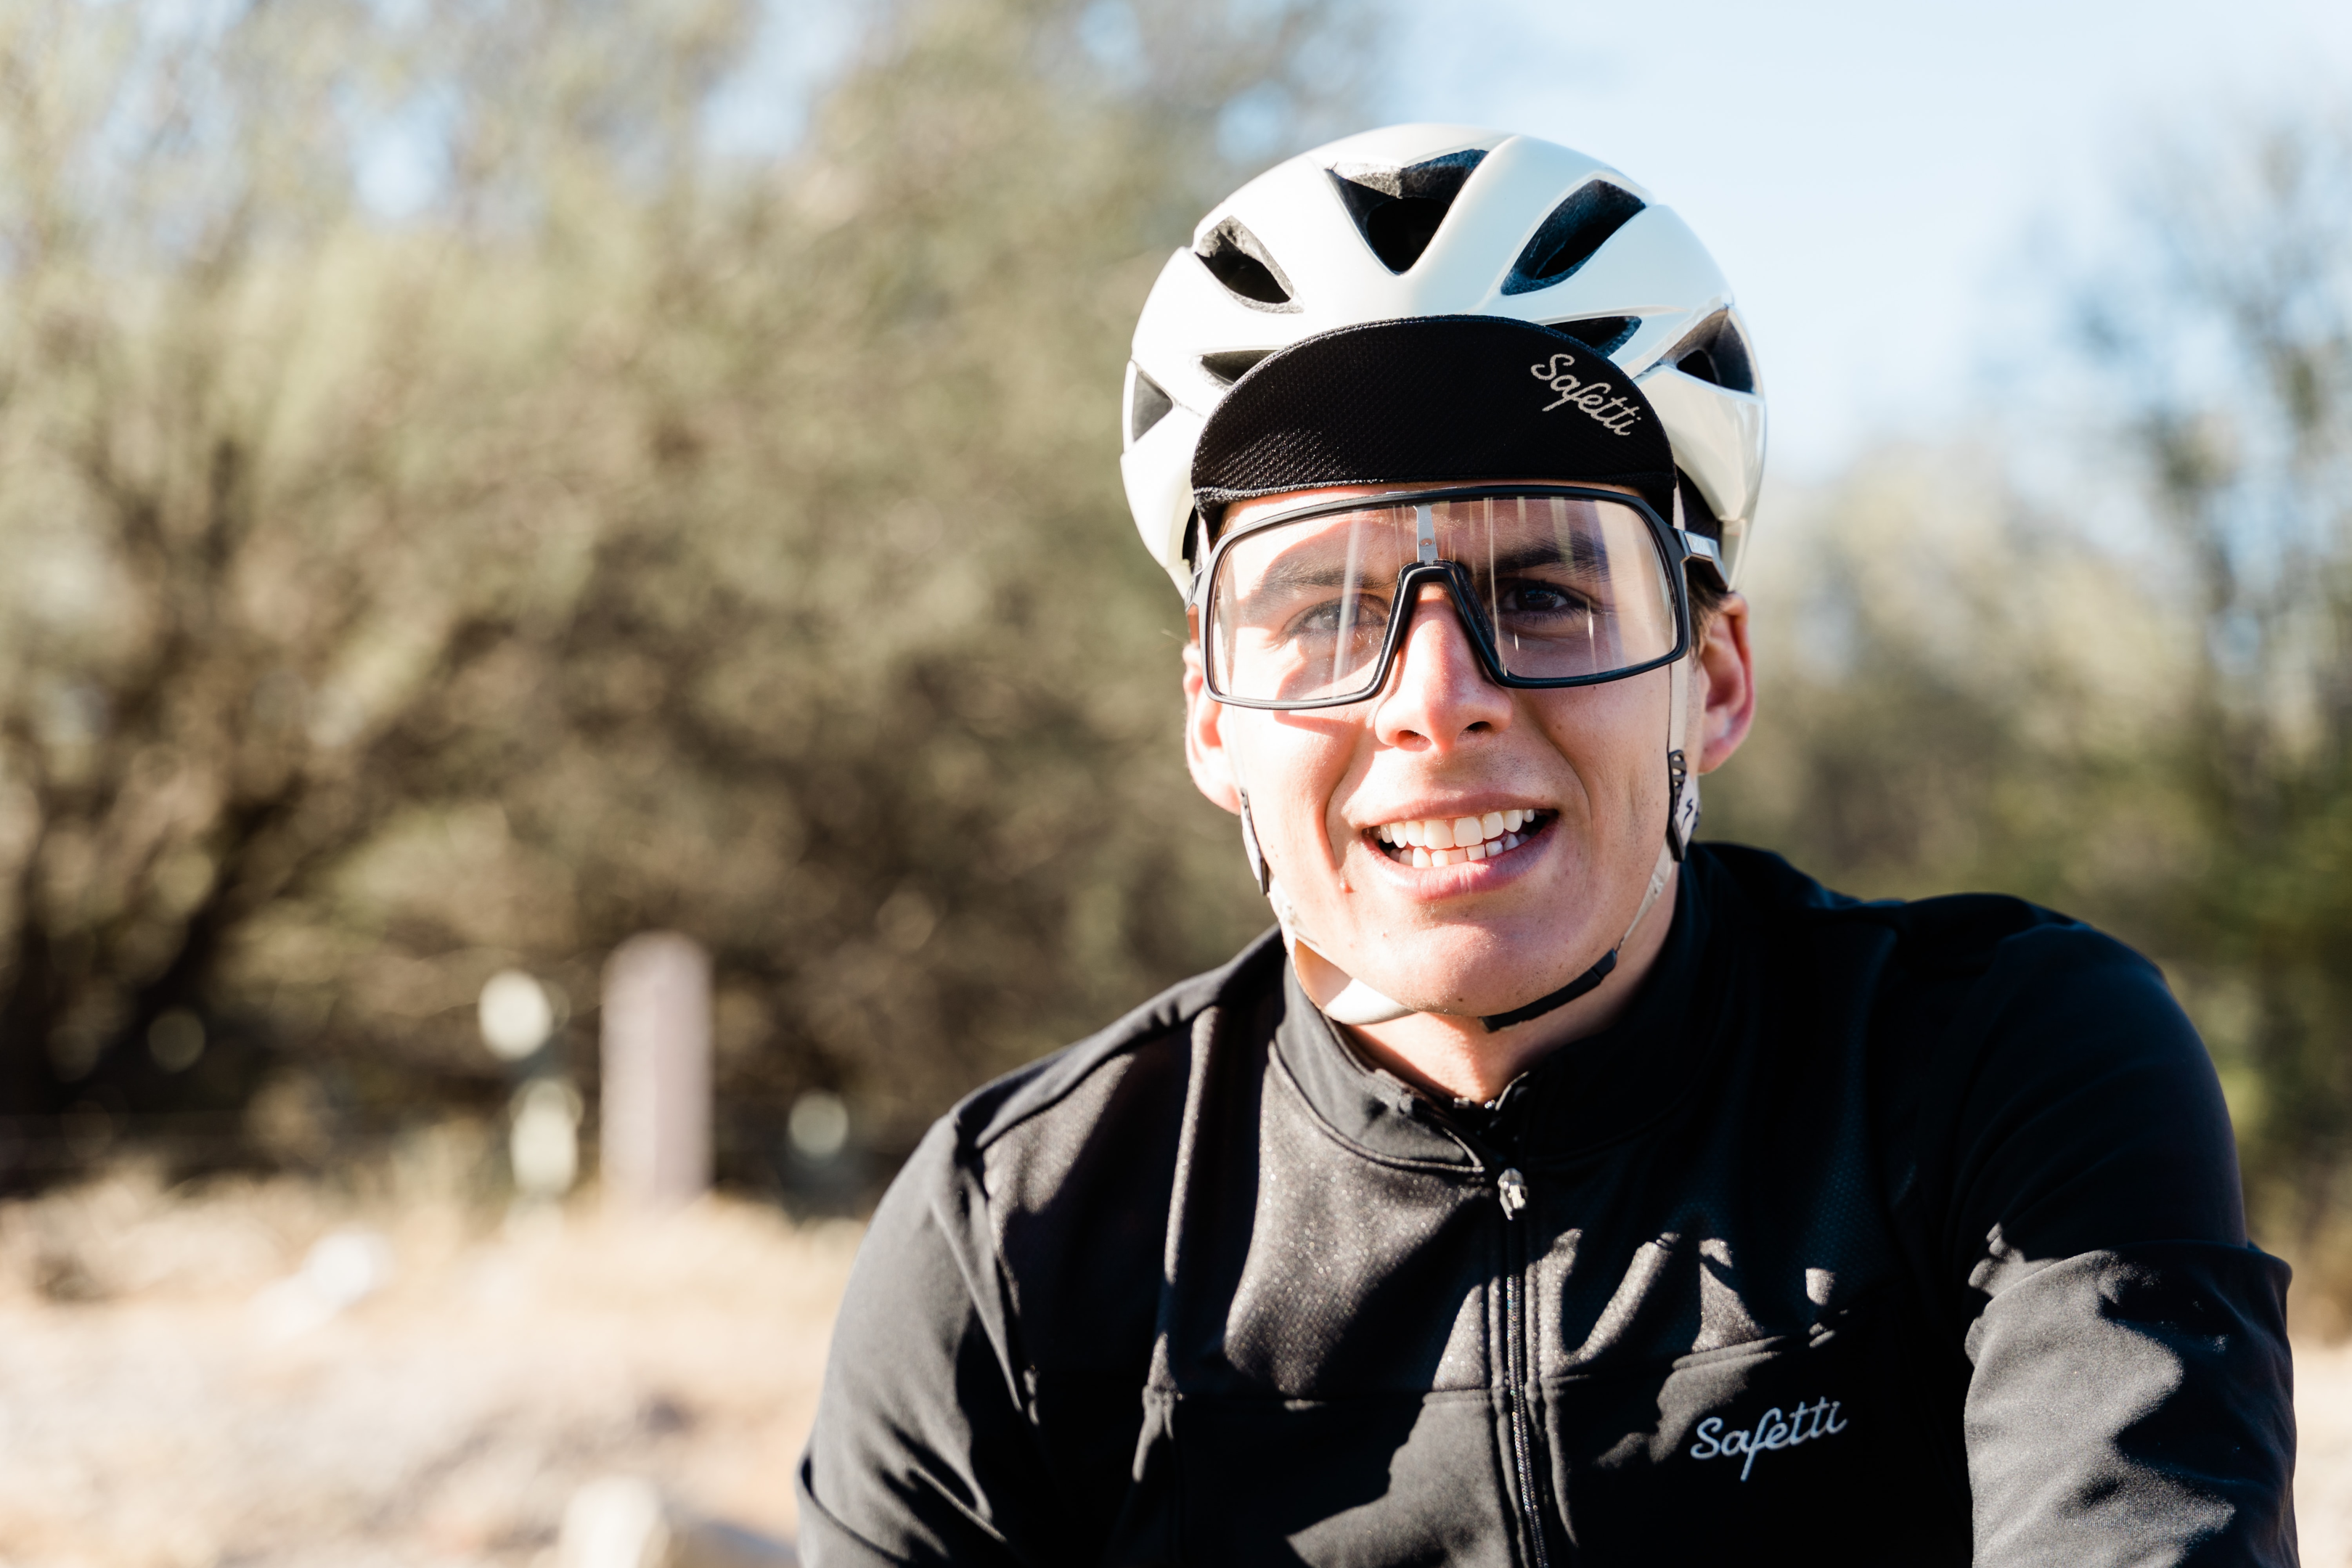 Ciclista utilizando óculos transparente